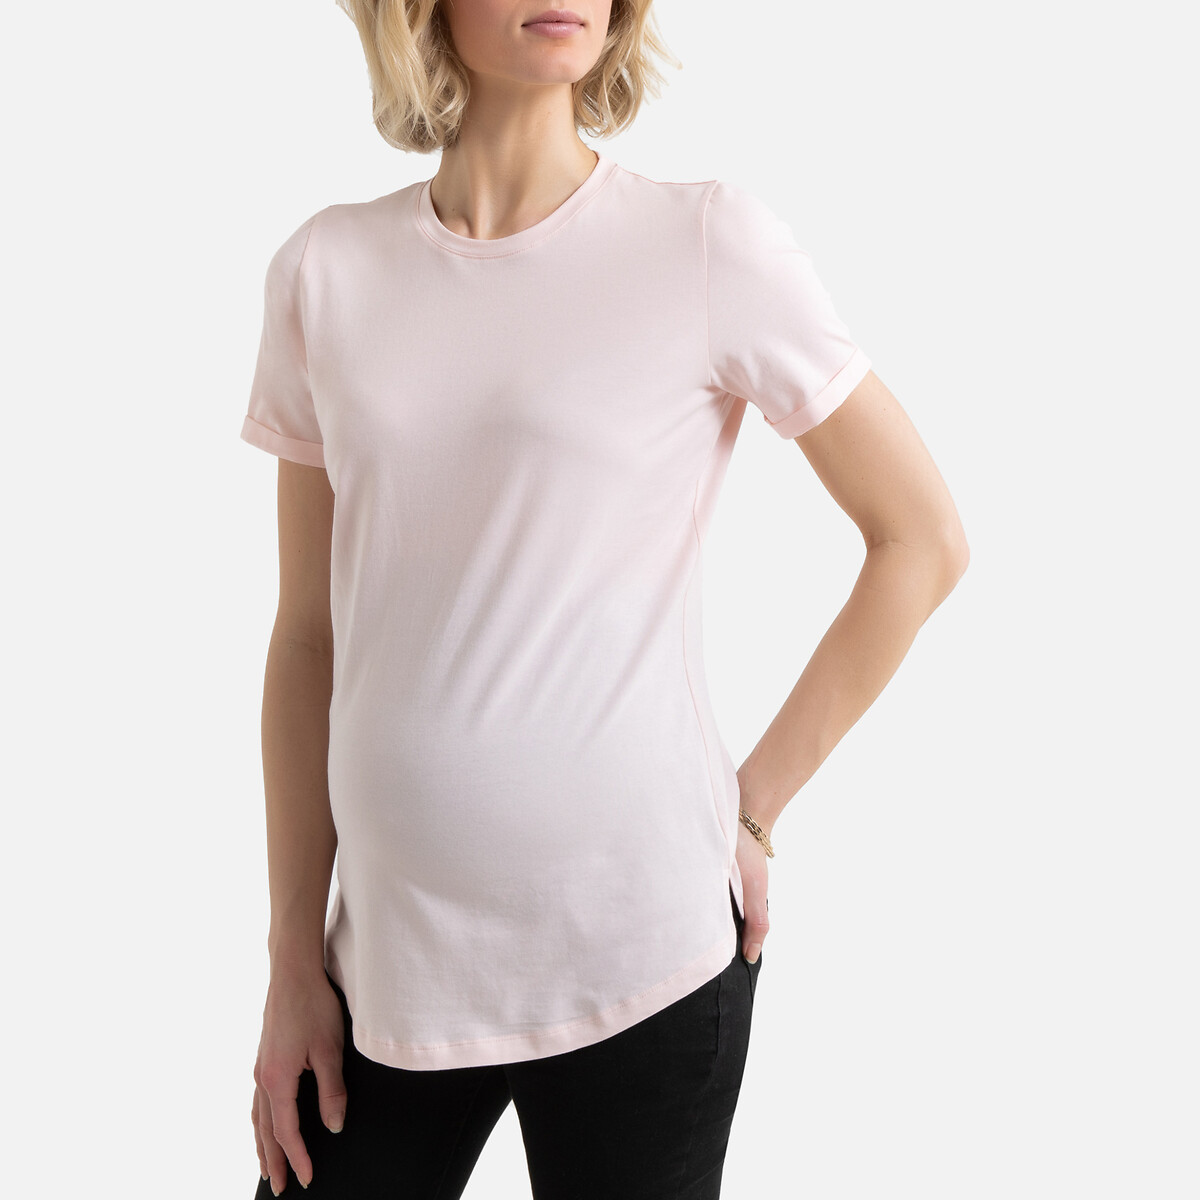 T-shirt com gola redonda e mangas curtas, para grávida